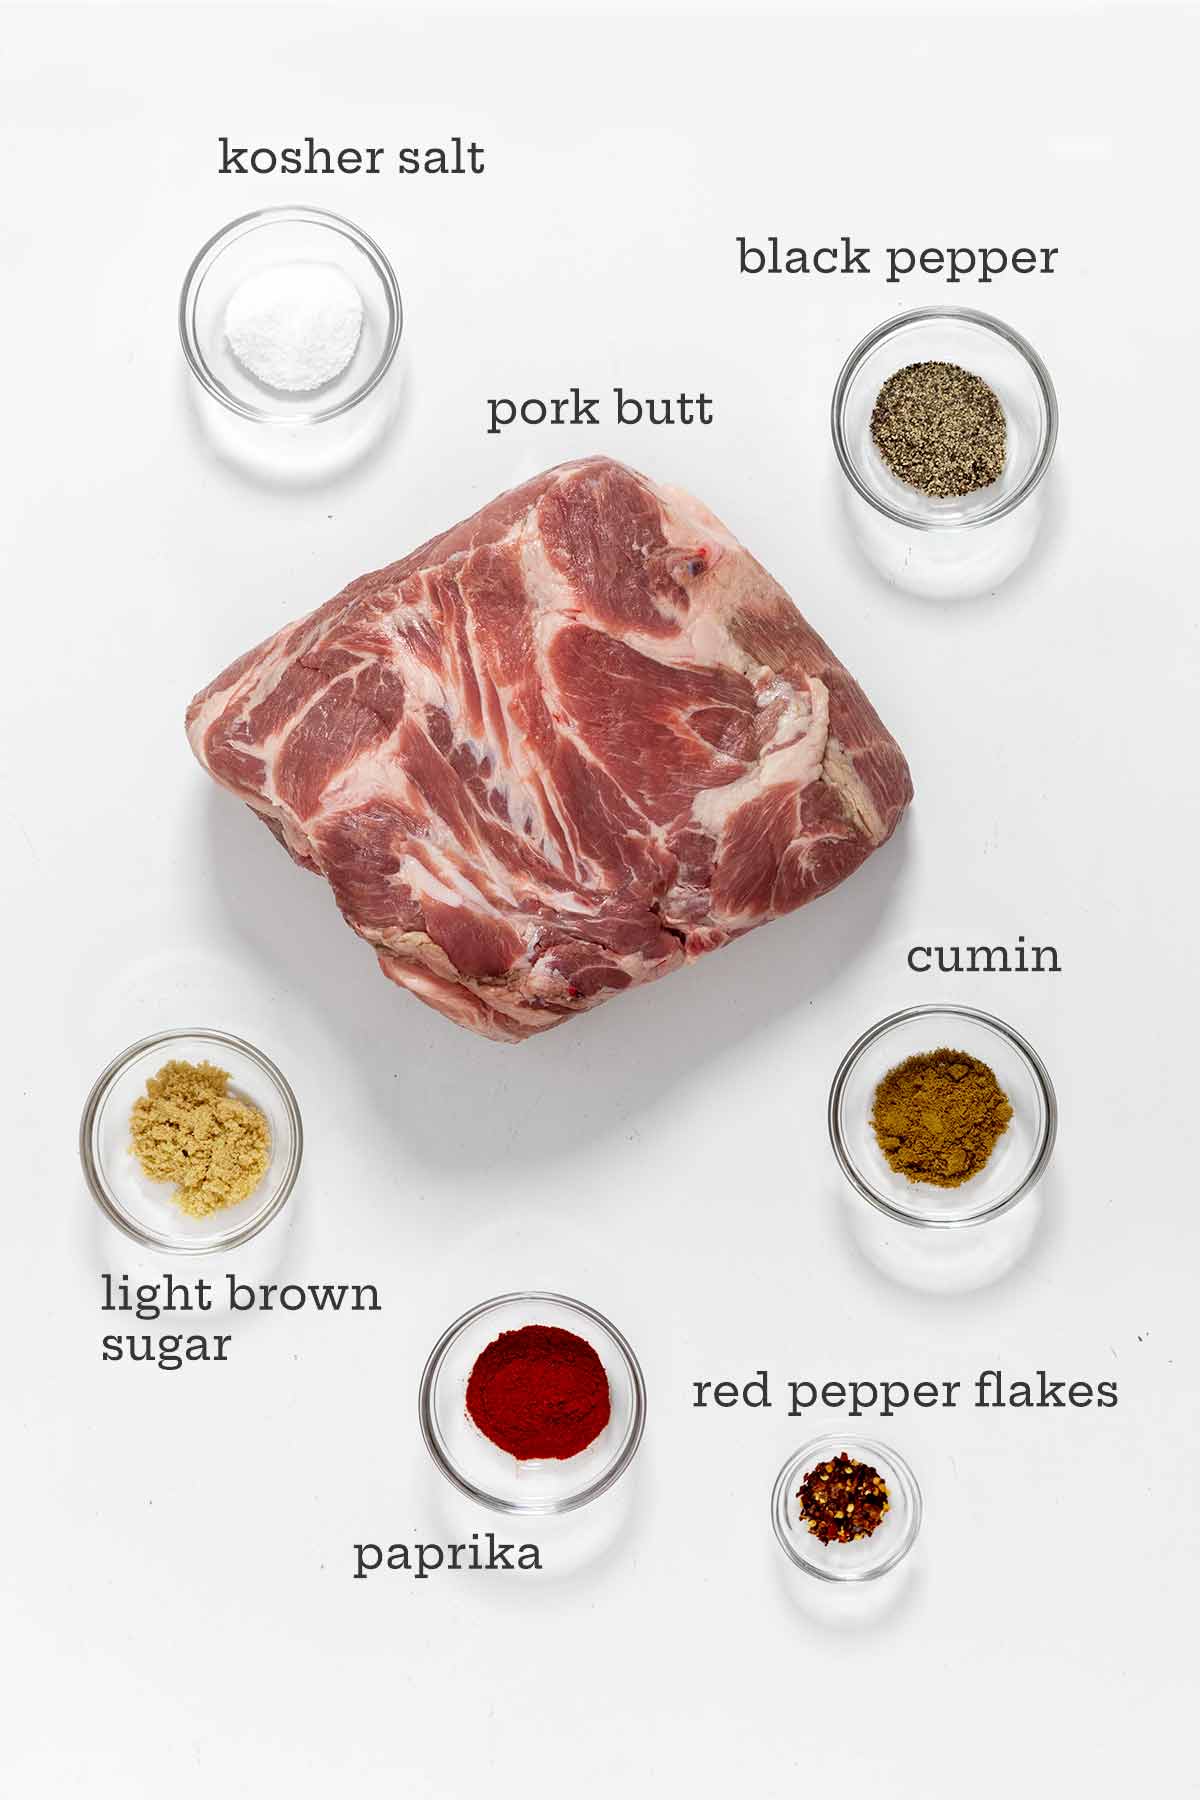 Ingredients for roast pork butt --pork shoulder, salt, cumin, paprika, light brown sugar, red pepper flakes, black pepper.